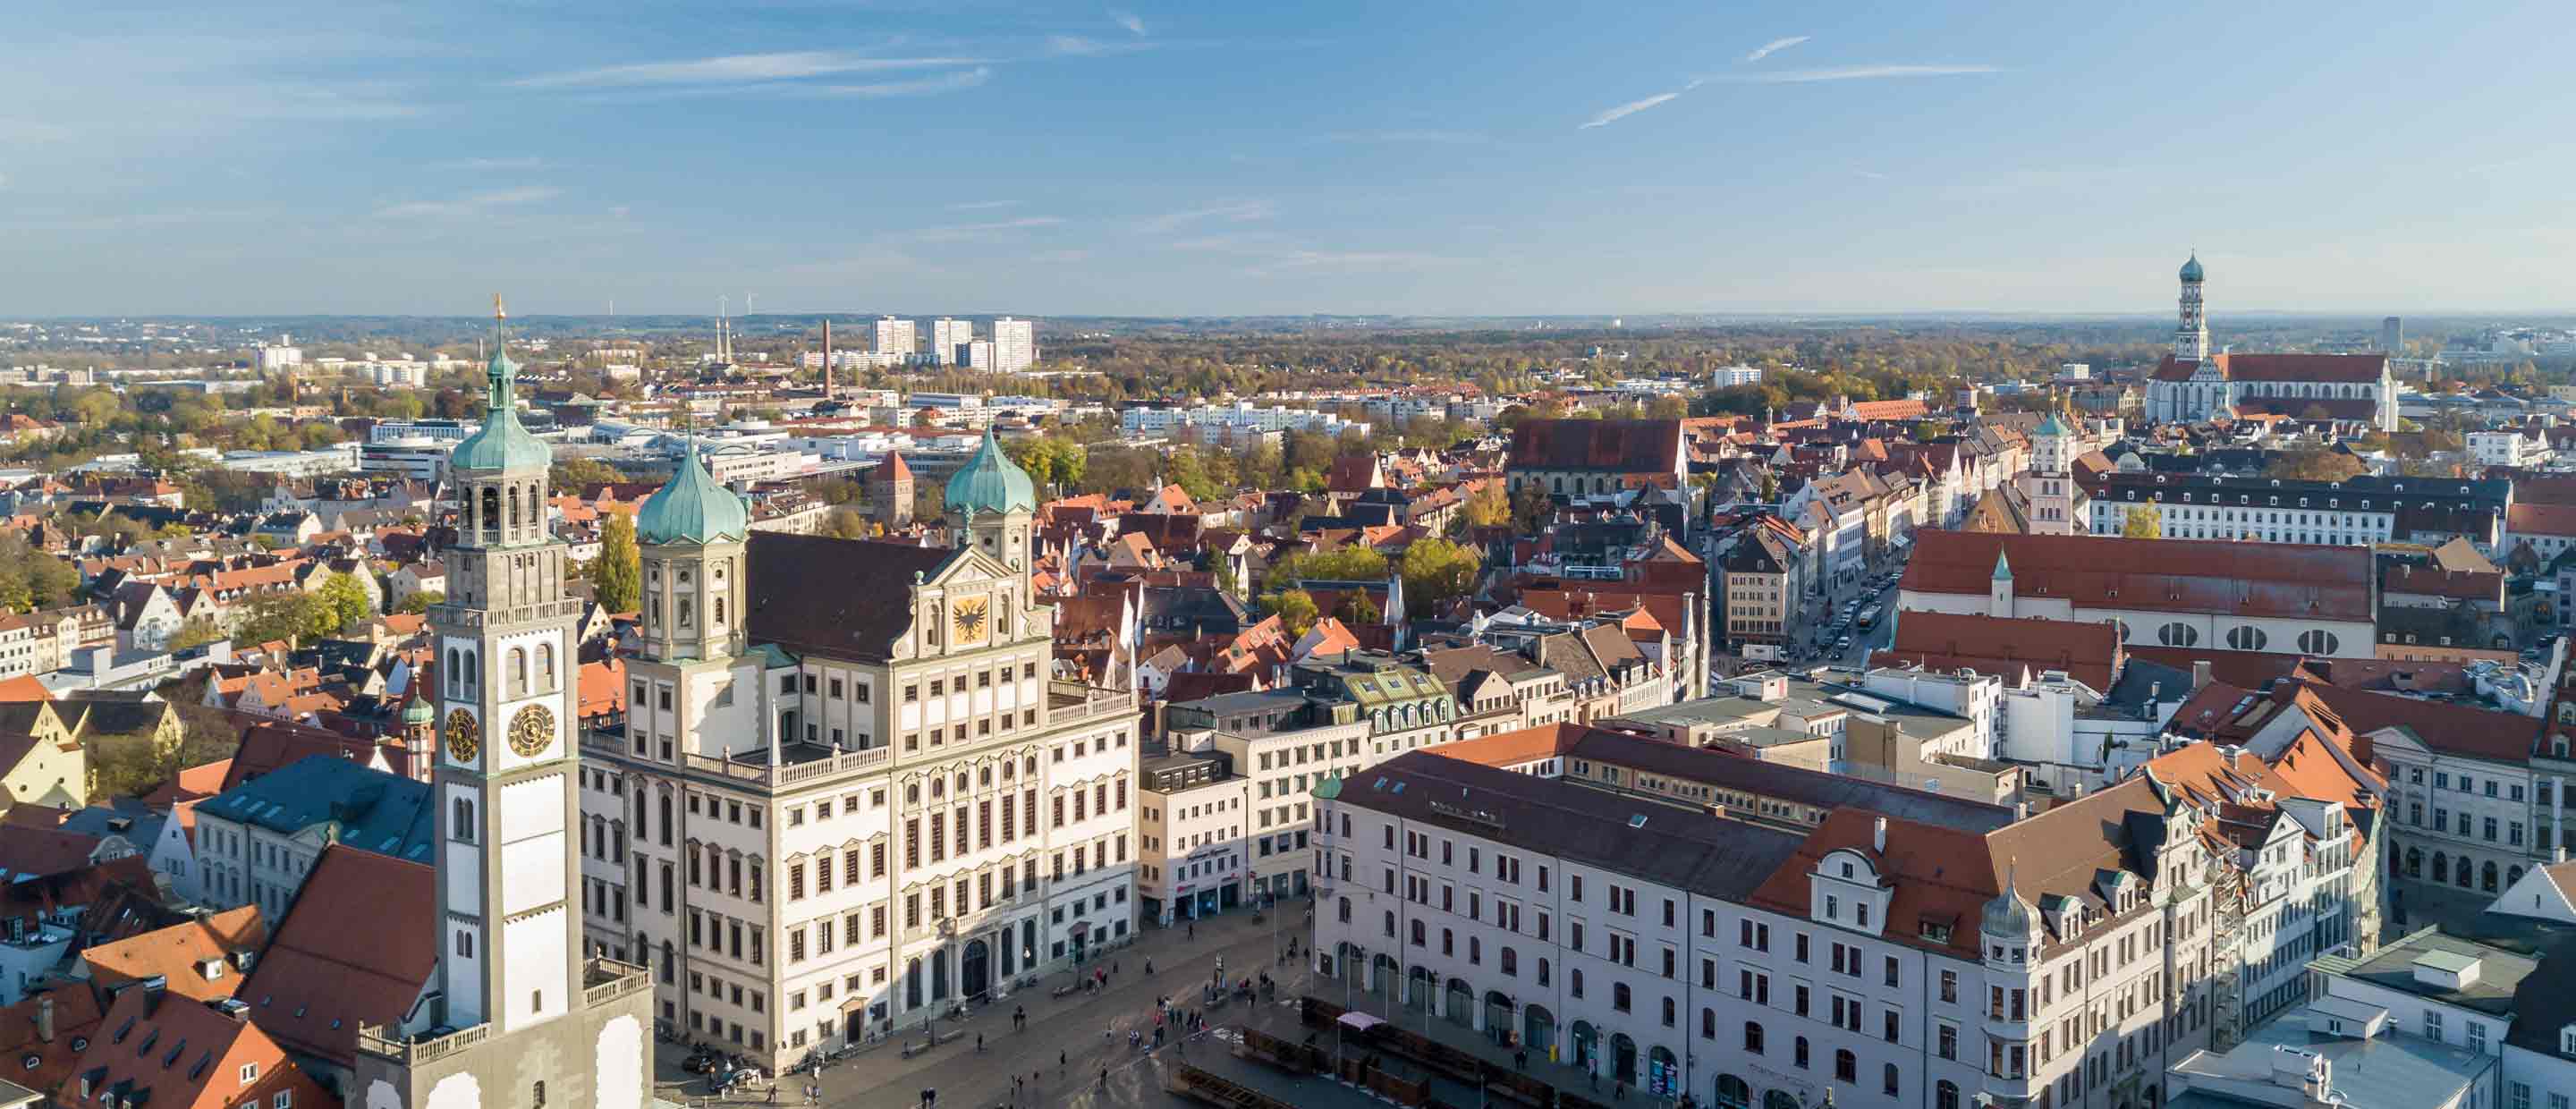 Augsburg wealth management | Deutsche Bank